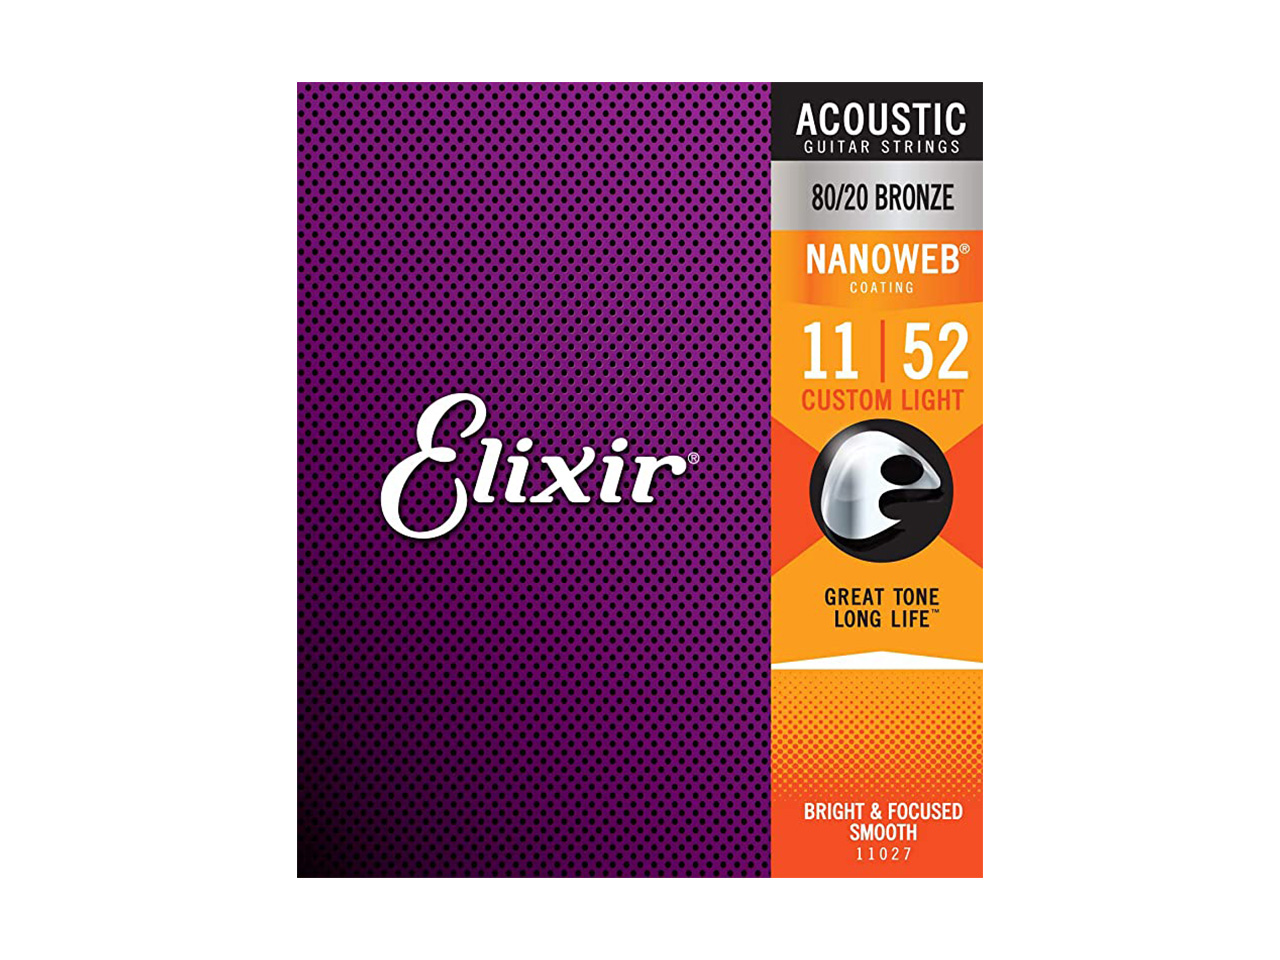 Elixir(エリクサー) NANOWEB Acoustic 80/20 Bronze  CUSTOM LIGHT【11027】 / 011-052 (アコースティックギター弦)